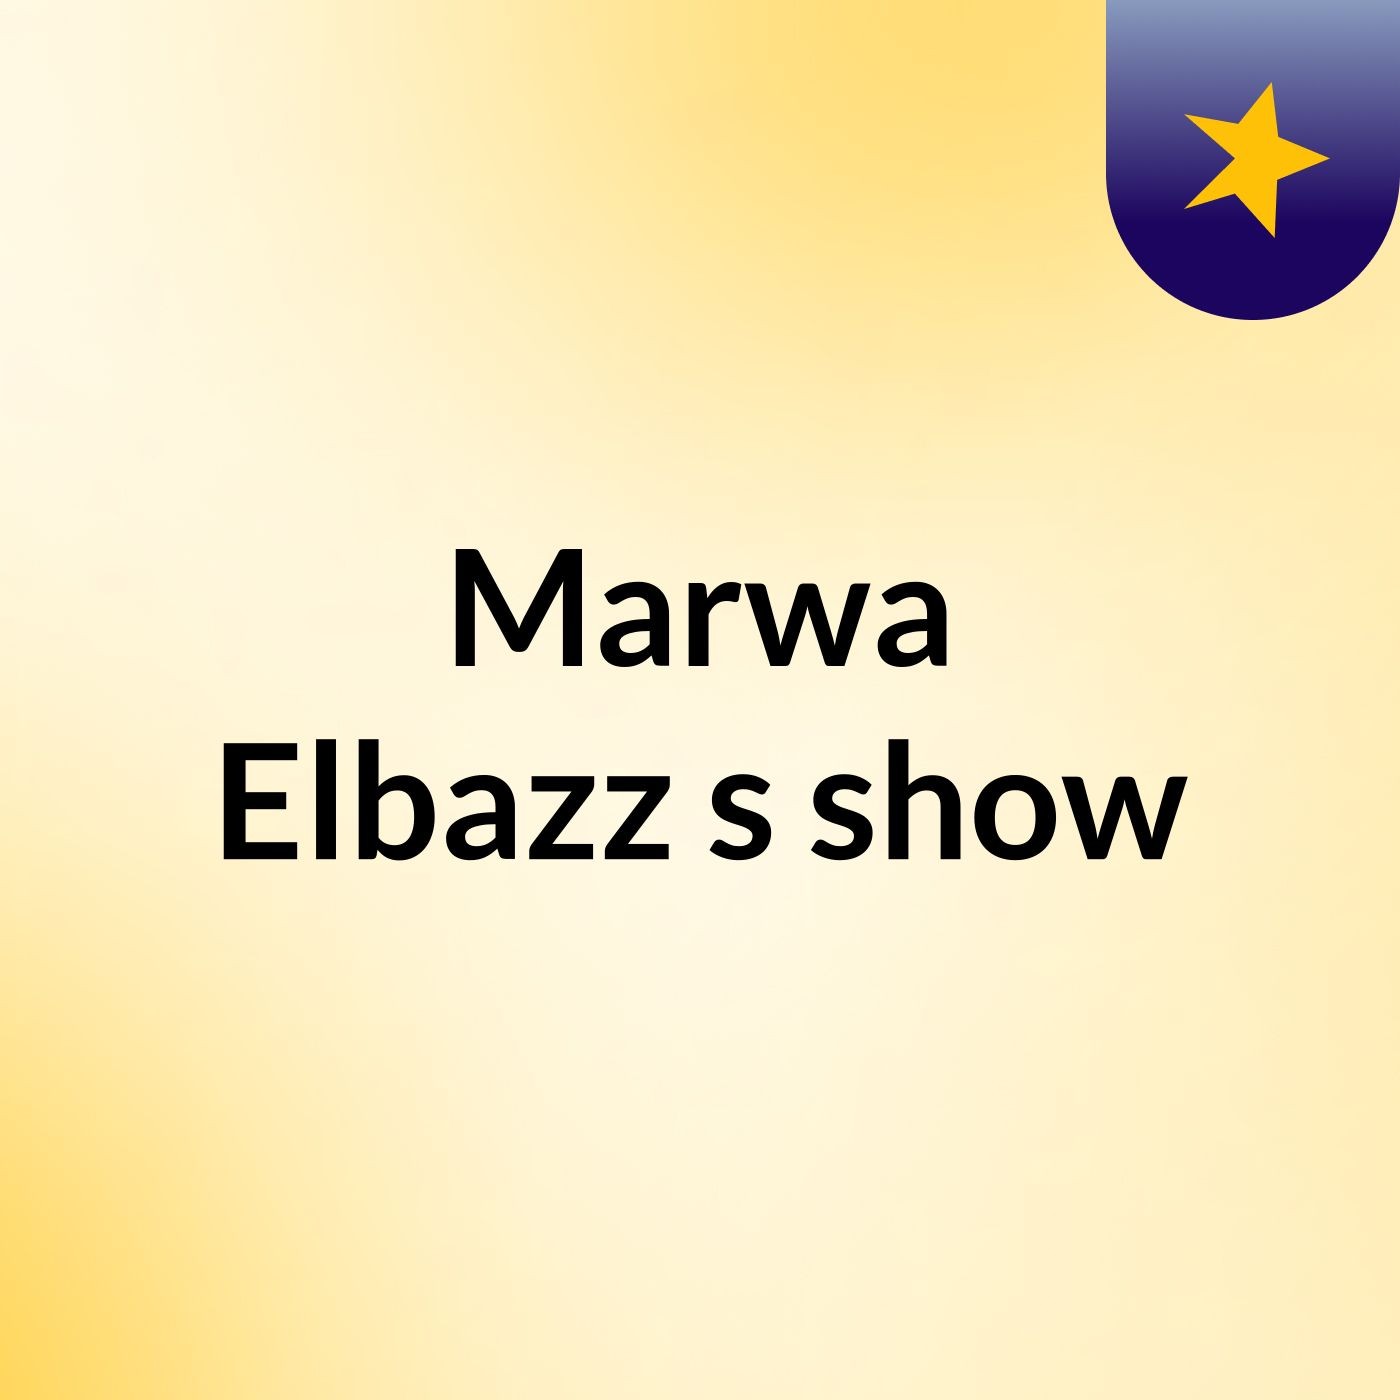 Episode 5 - Marwa Elbazz's show